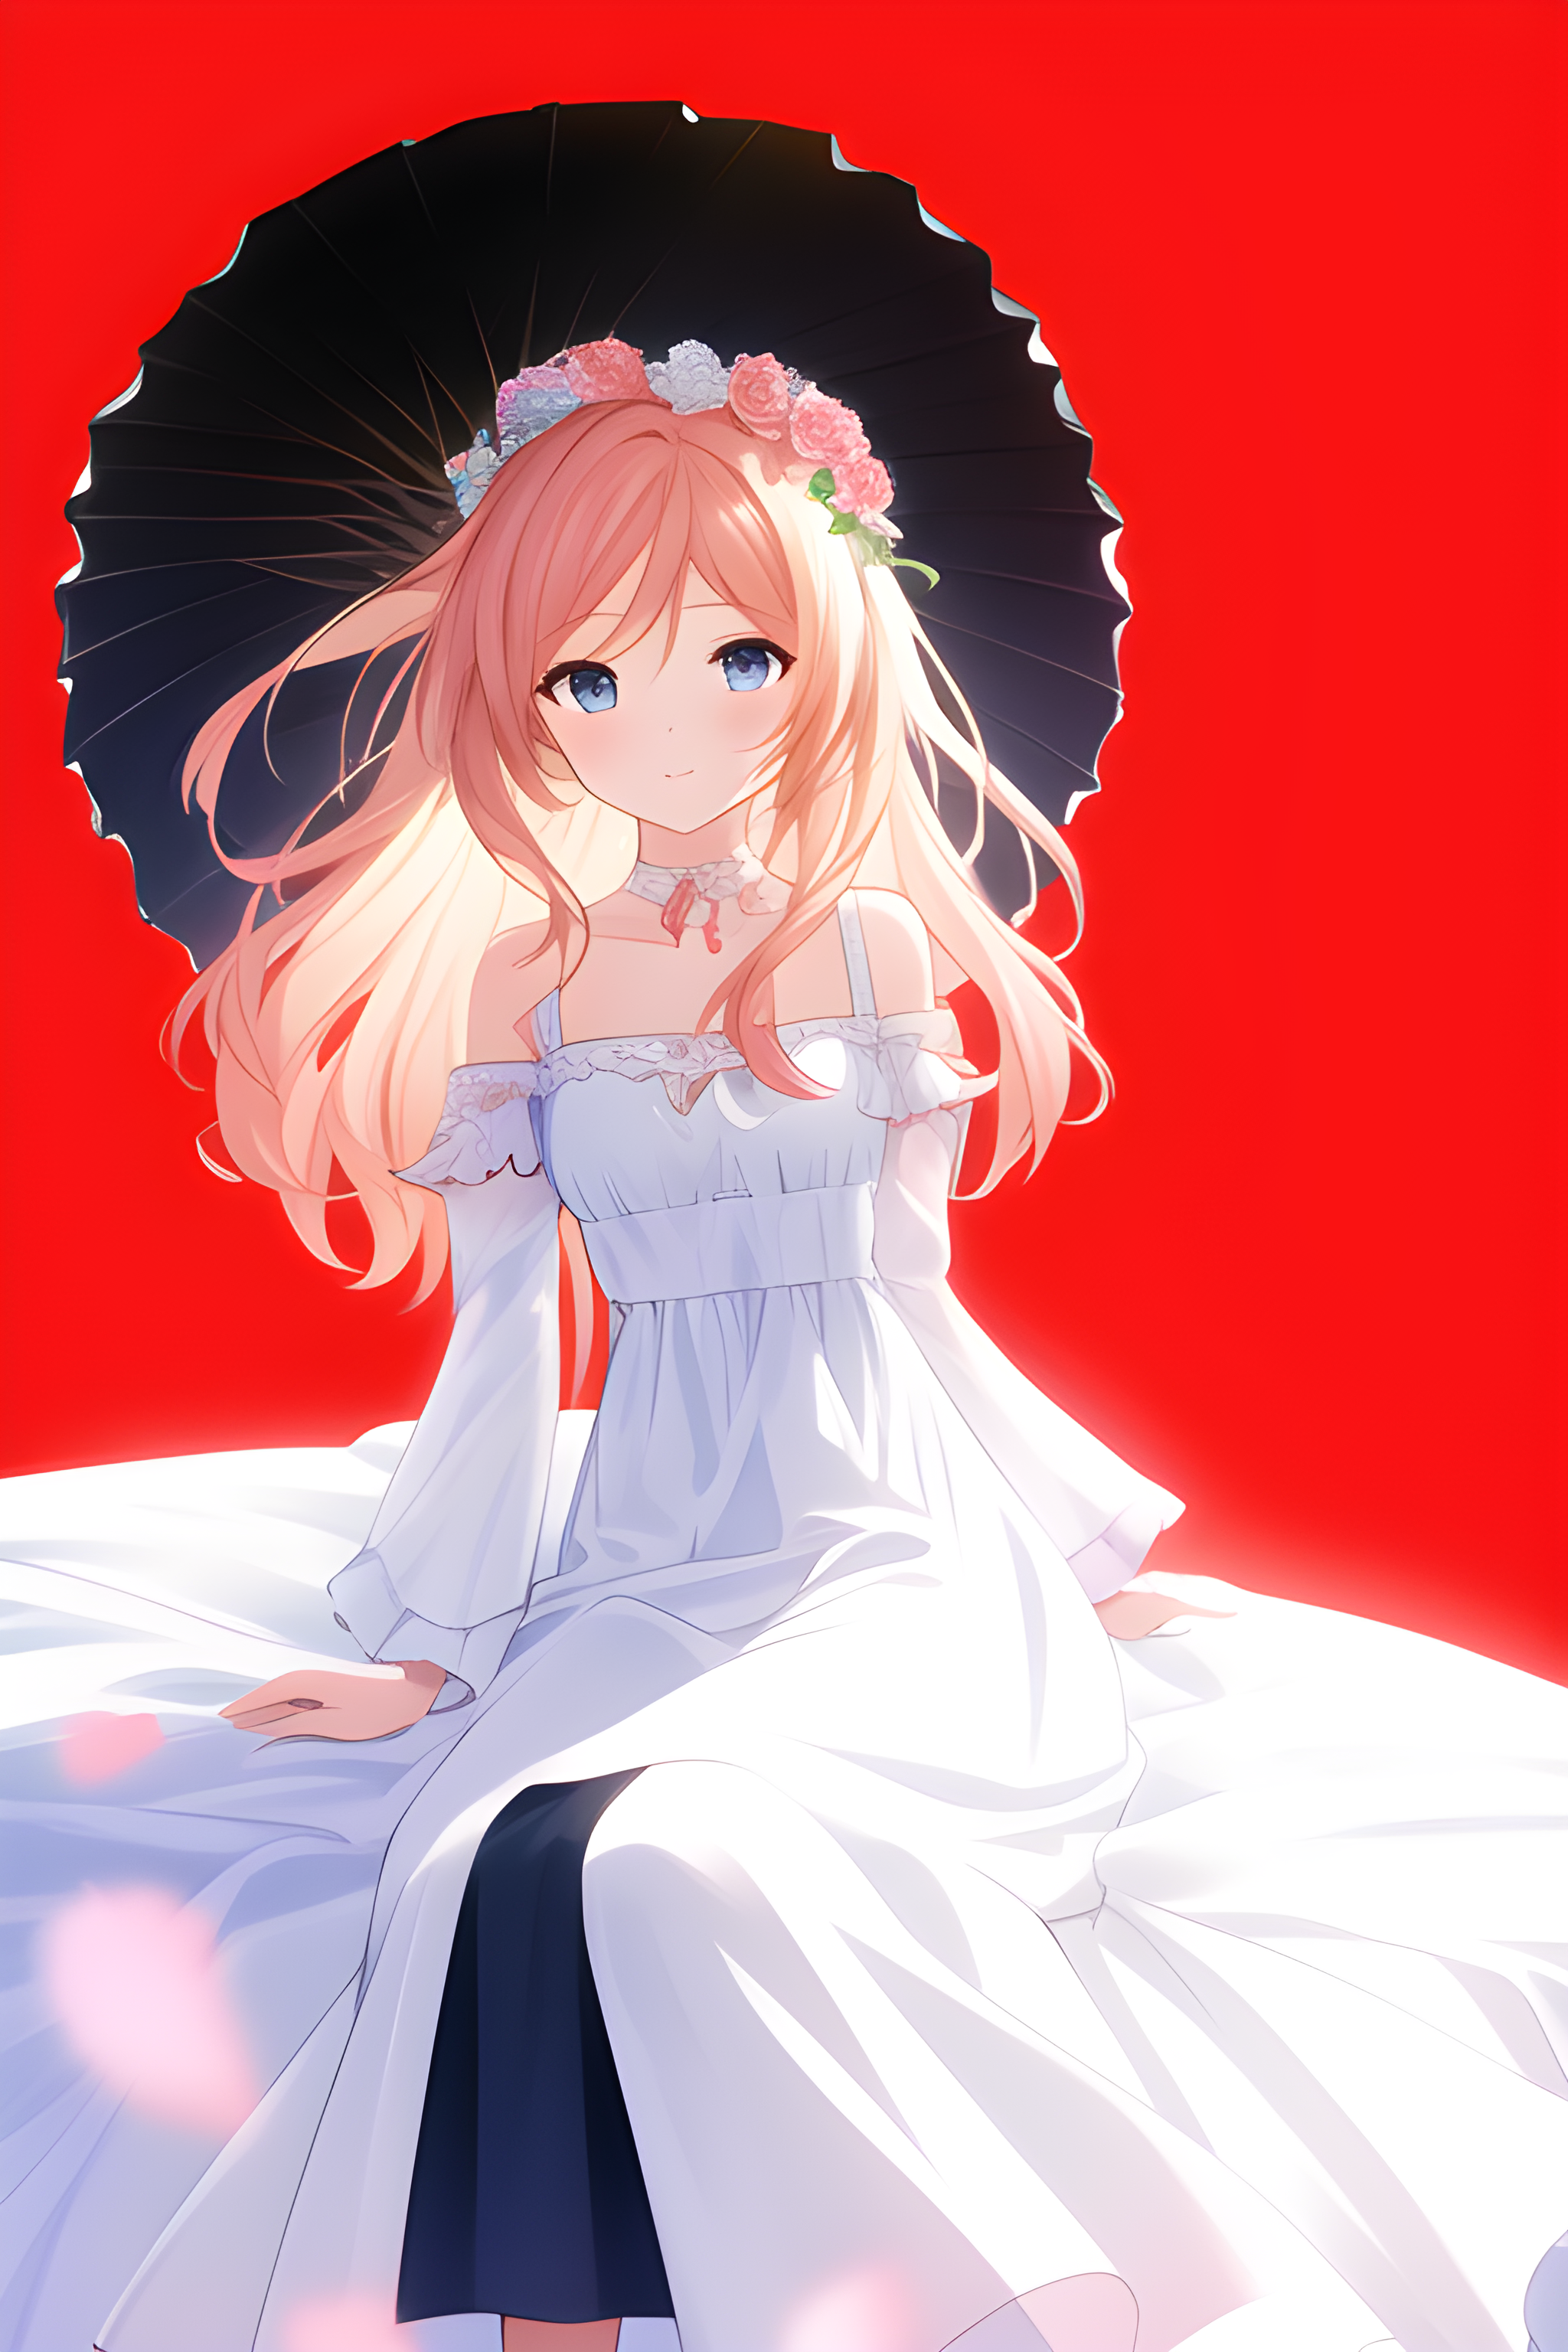 Long Black Hair Anime Girl White Dress Wreath HD Anime Girl Wallpapers | HD  Wallpapers | ID #87737